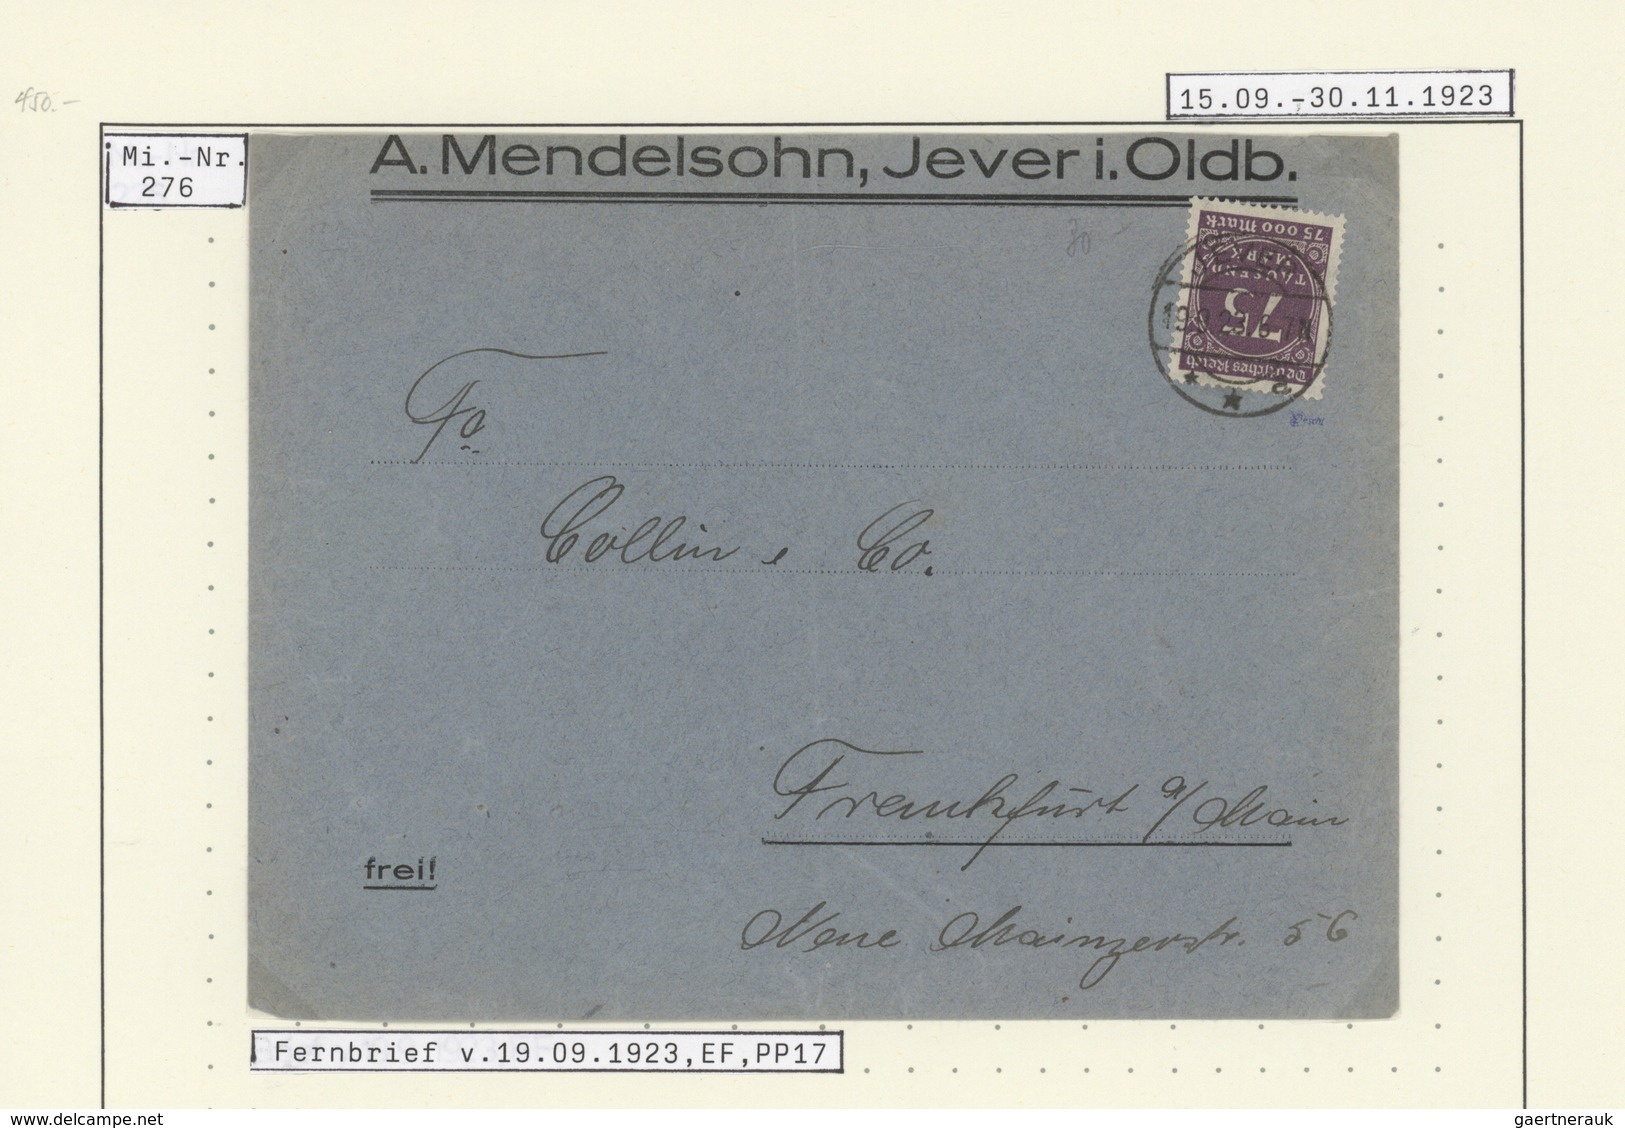 Deutsches Reich - Inflation: 1923, vielseitige Sammlung von ca. 300 Briefen und Karten, sauber auf B